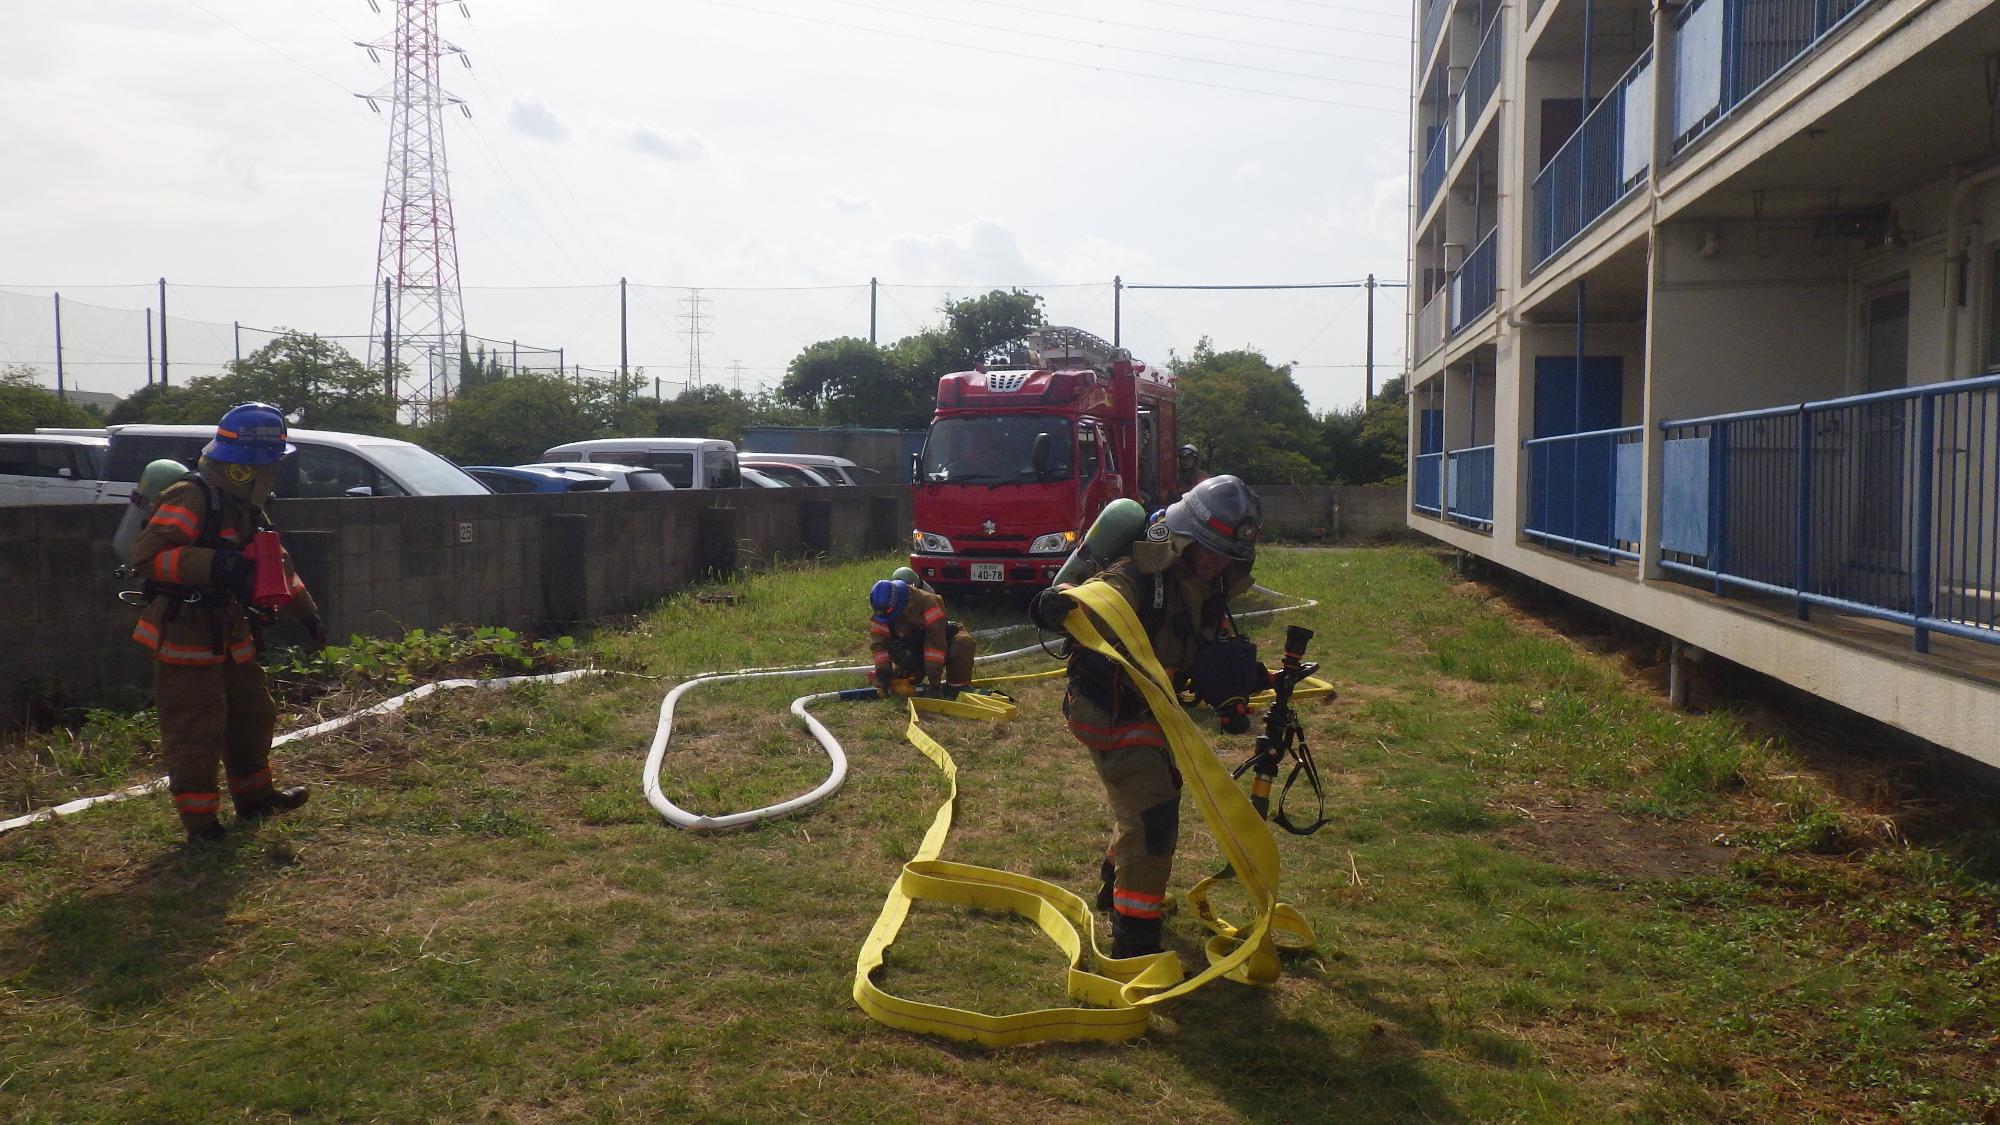 伊刈消防隊が放水準備。放水に使用するホースやノズルは東浦和出張消防隊のものを使用します。これは、災害現場に近い車両の資器材を使用することで作業効率を良くするためです。